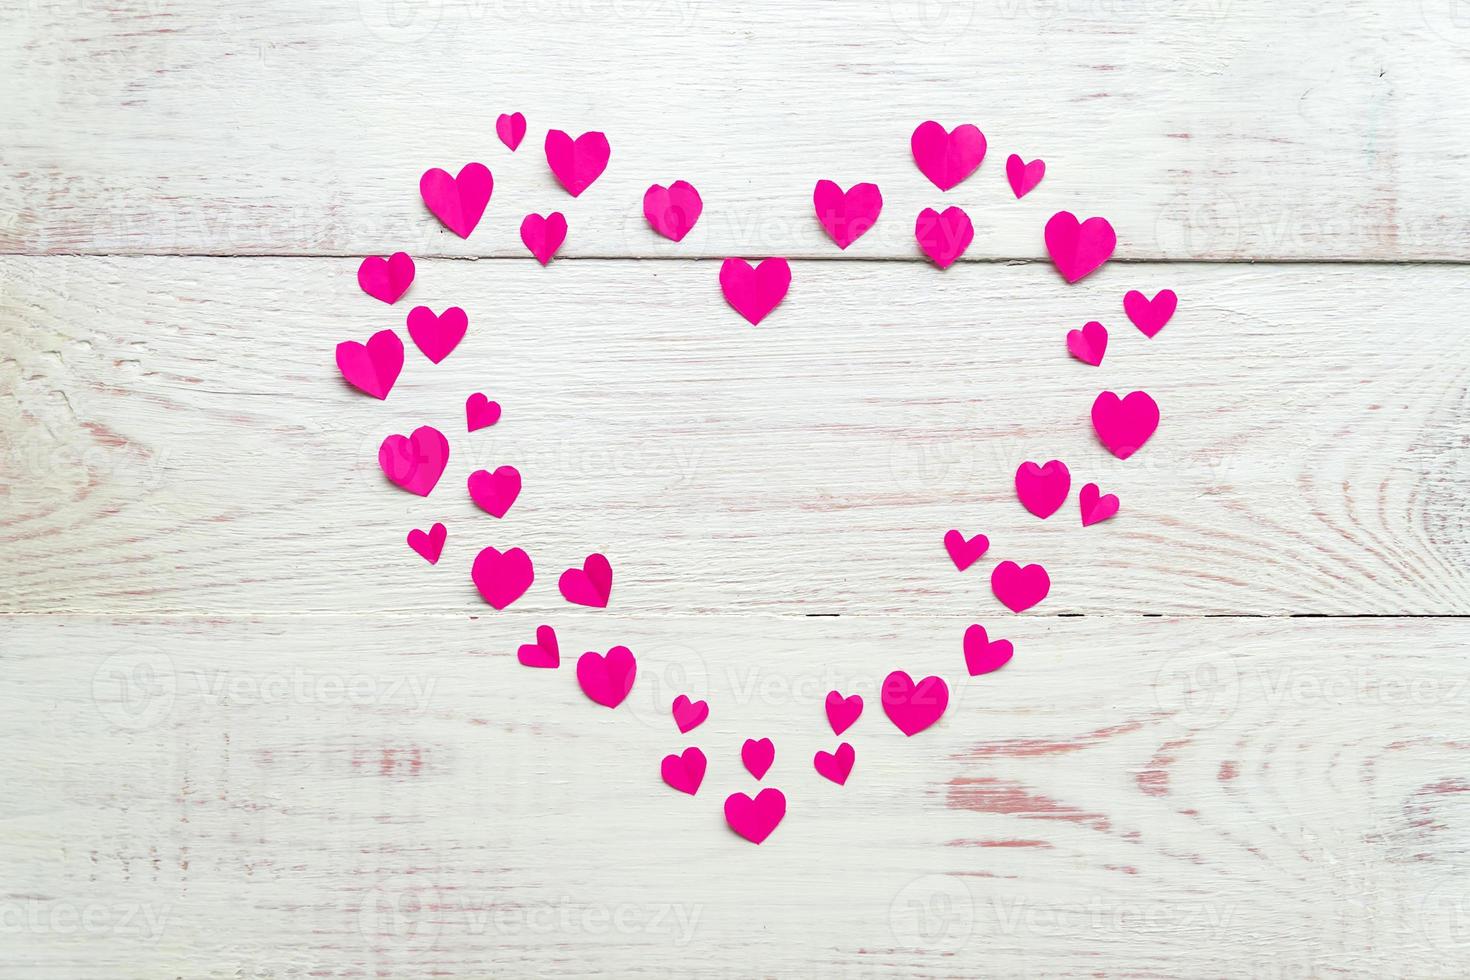 grande coração rosa feito de pequenos corações de papel recortado em backround de madeira. decoração artesanal para o dia dos namorados. foto